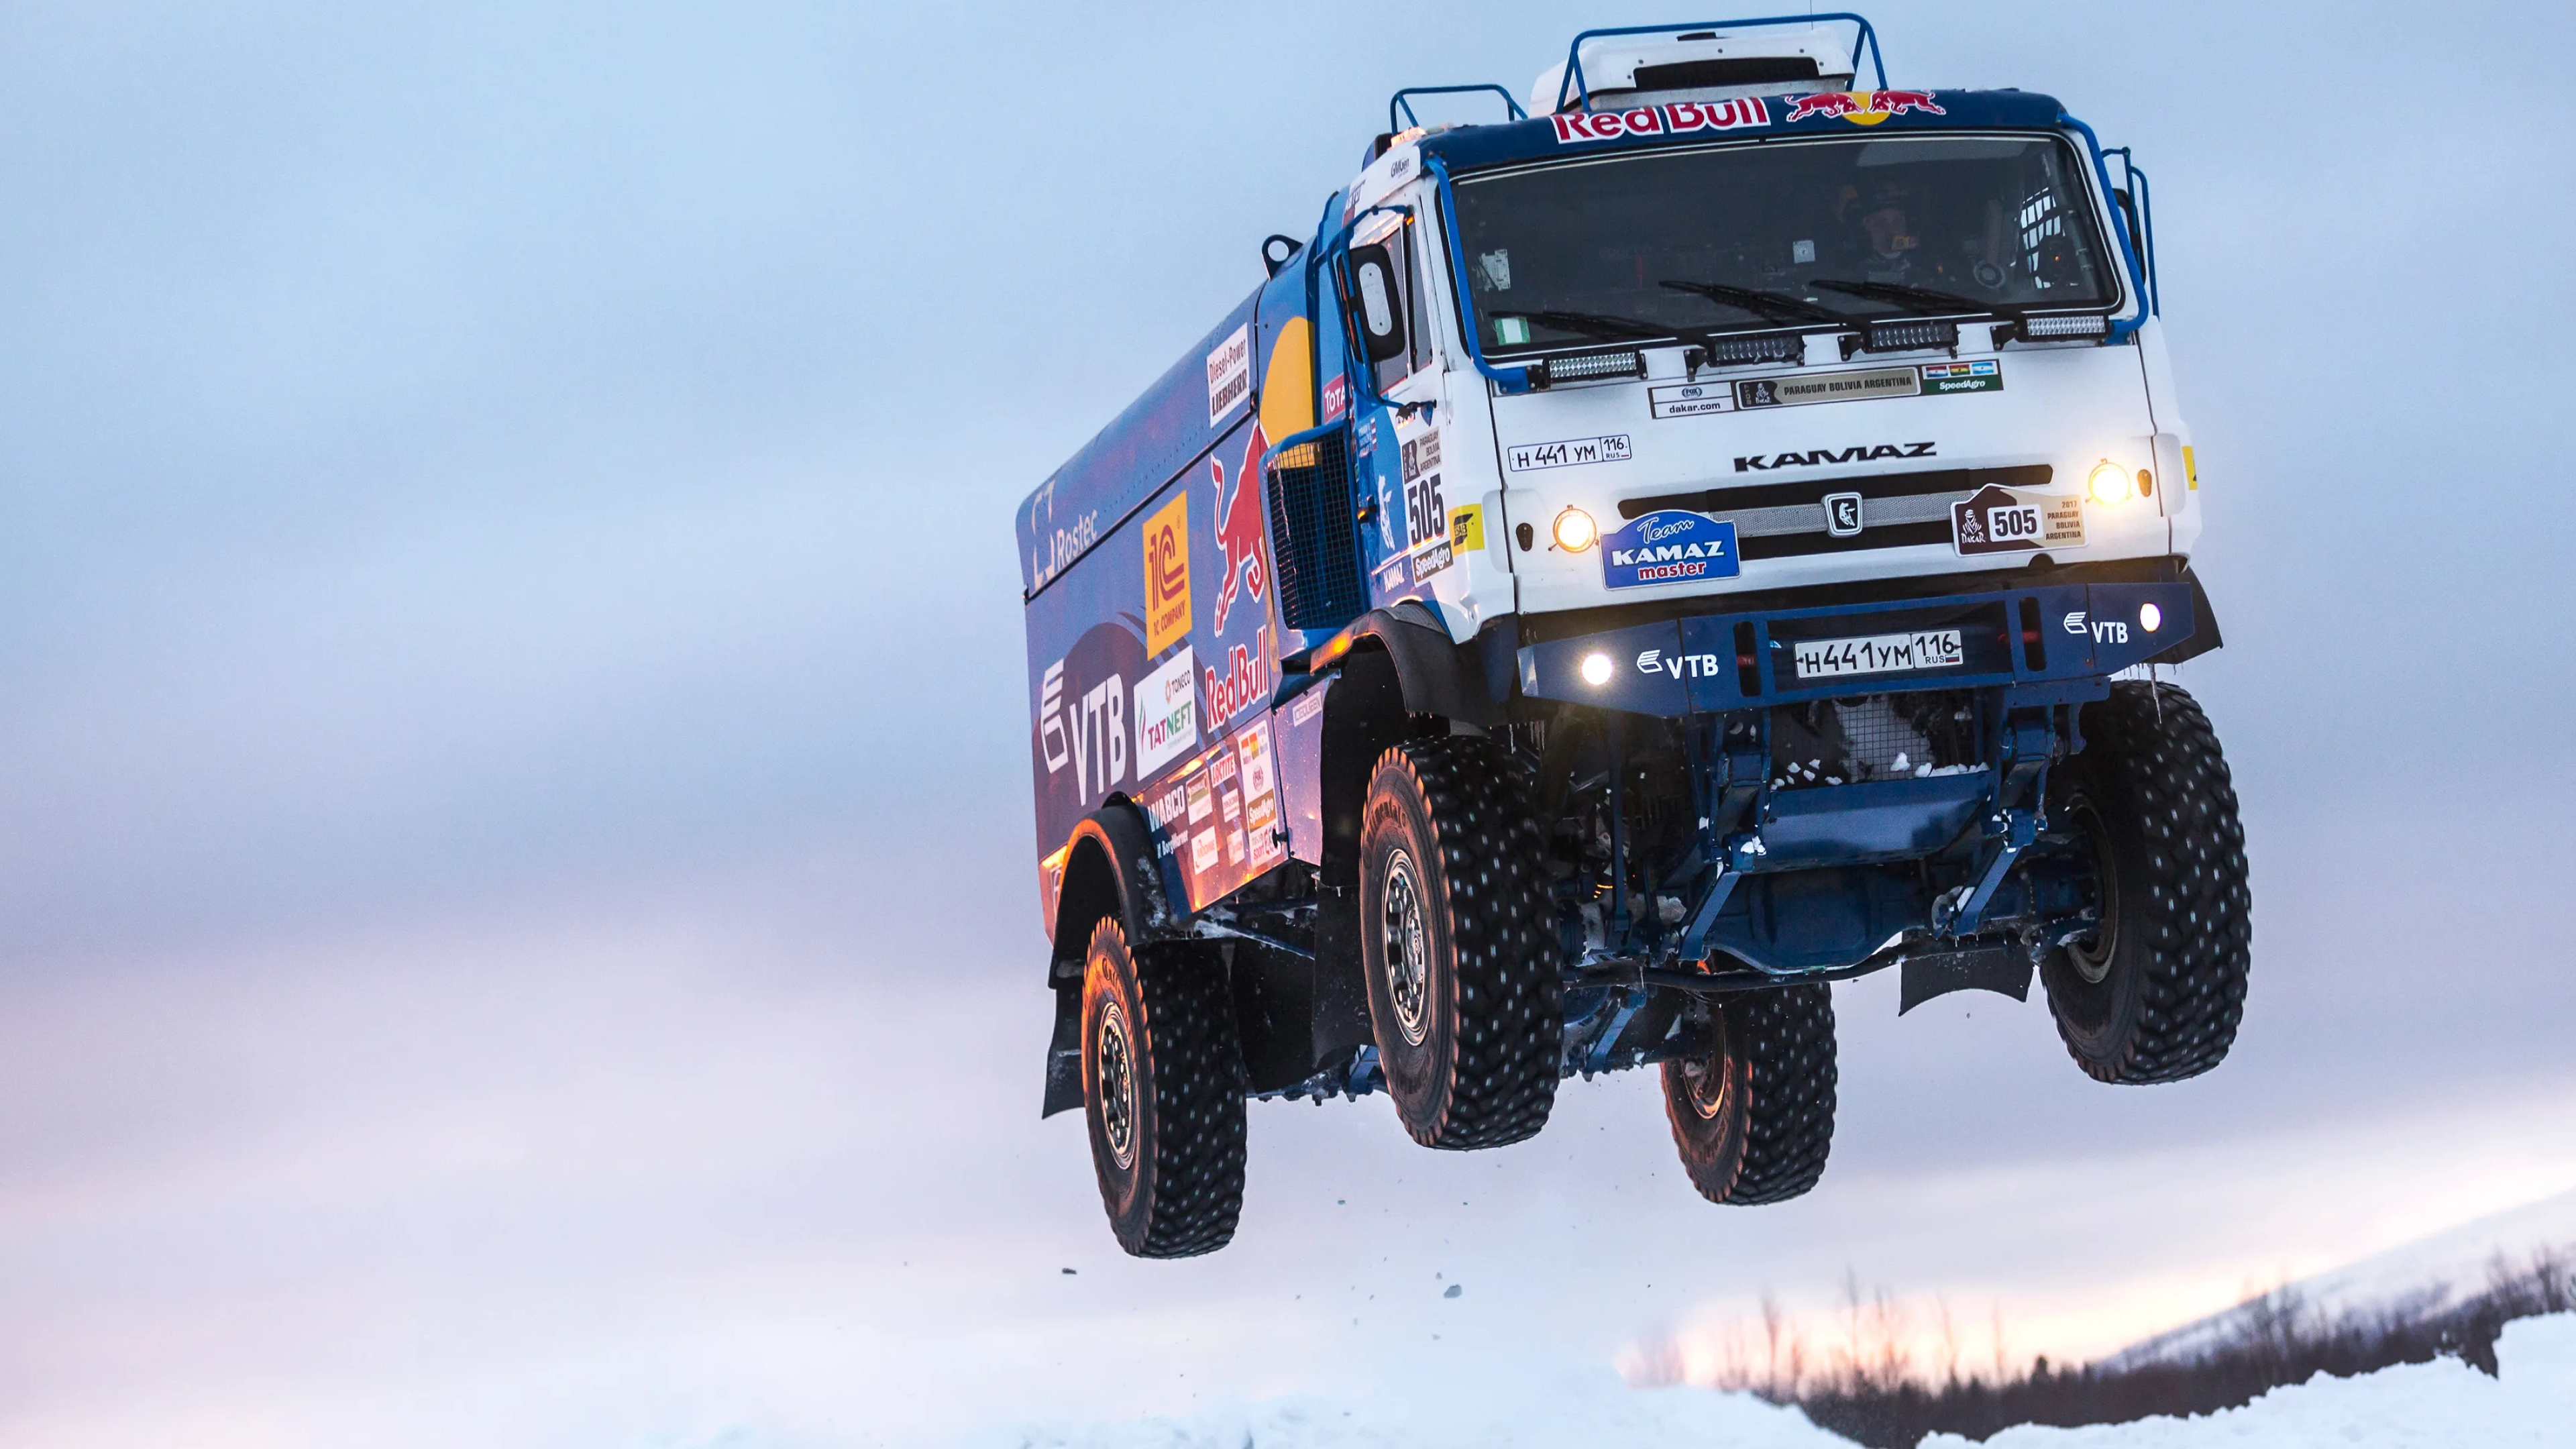 Kamaz Master, Dakar truck, Pistonheads UK, Monster trucks, 3840x2160 4K Desktop